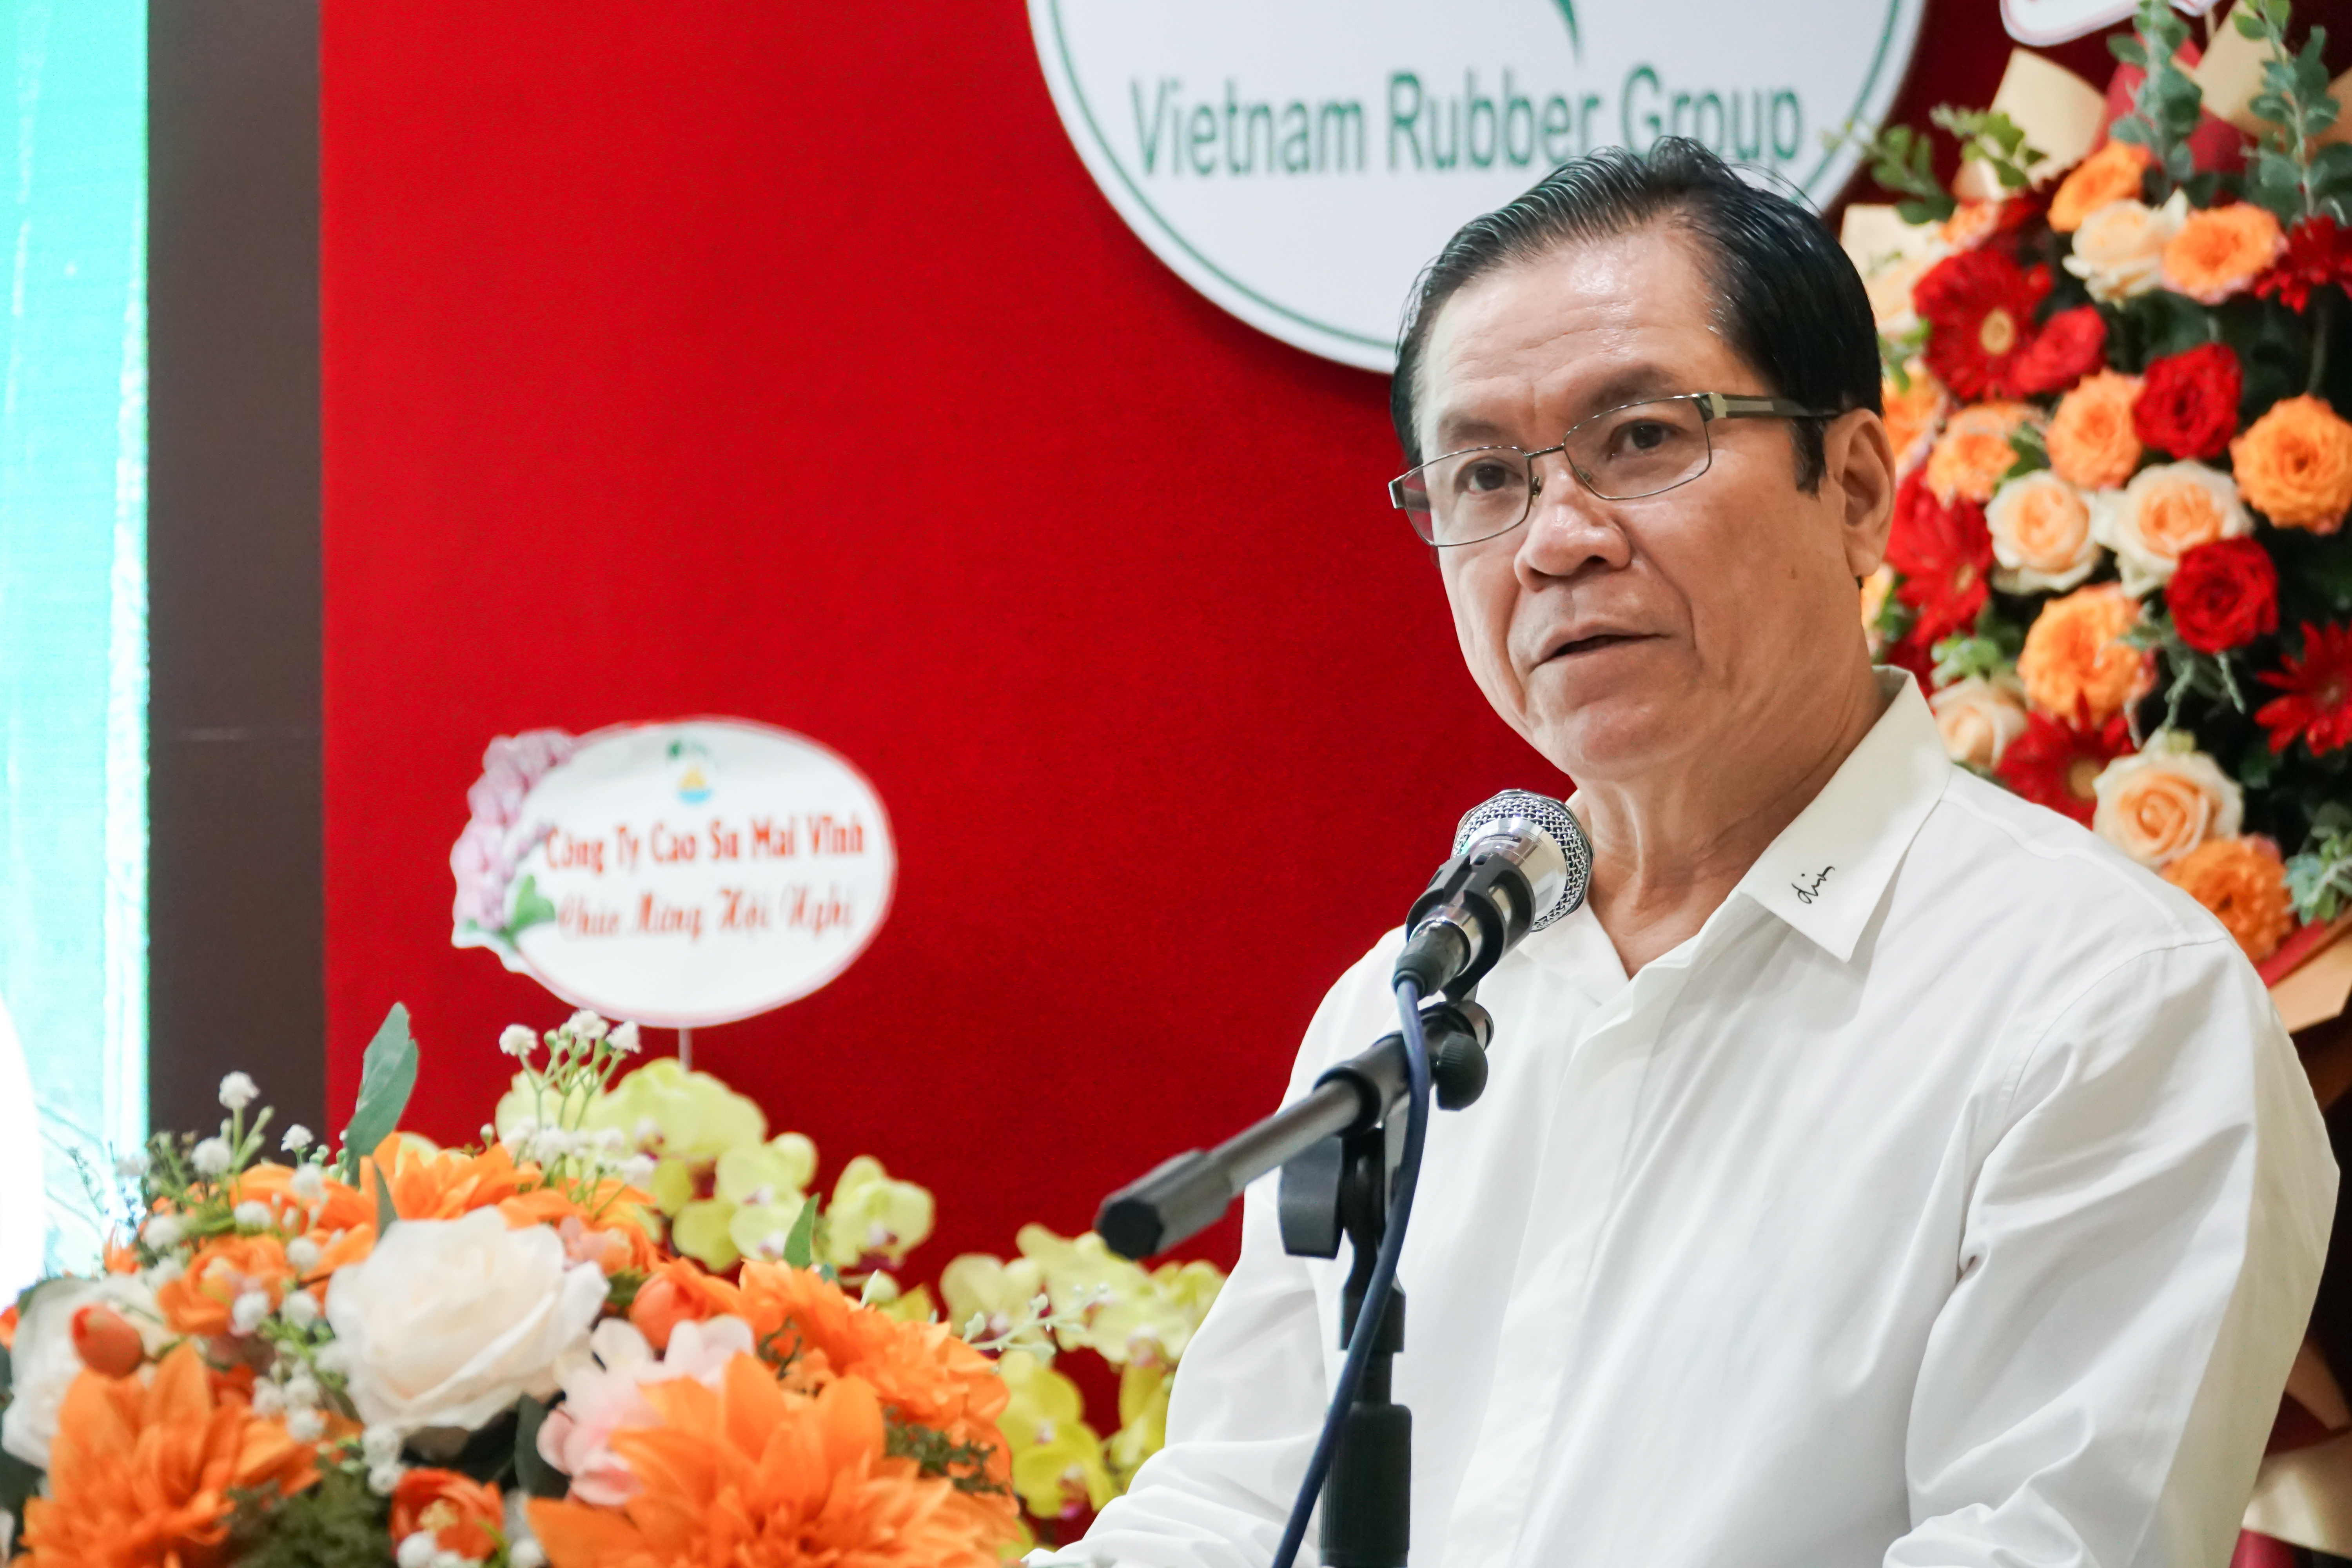 Ông Lê Thanh Hưng, Tổng giám đốc VRG phát biểu tại Hội nghị.